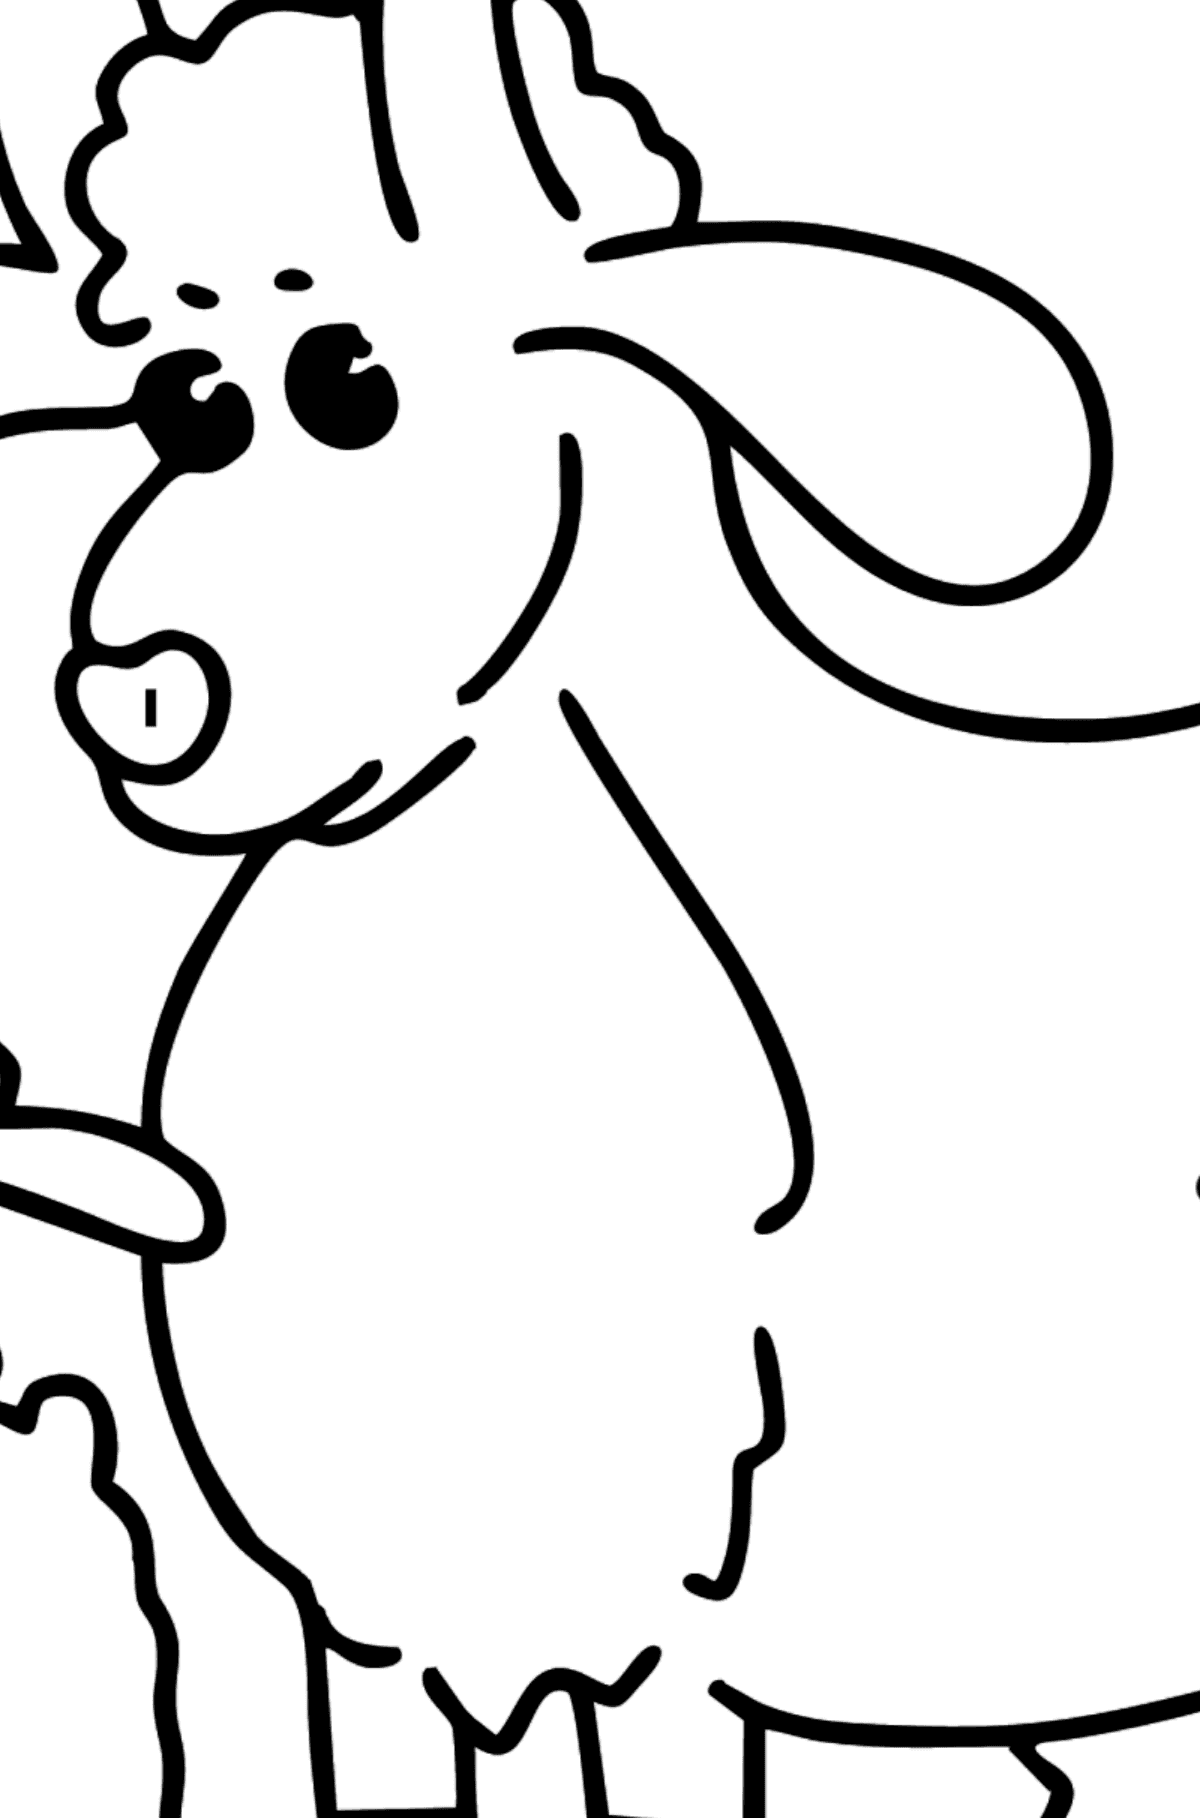 Dibujo de Cabra y cabrito para colorear - Colorear por Símbolos para Niños